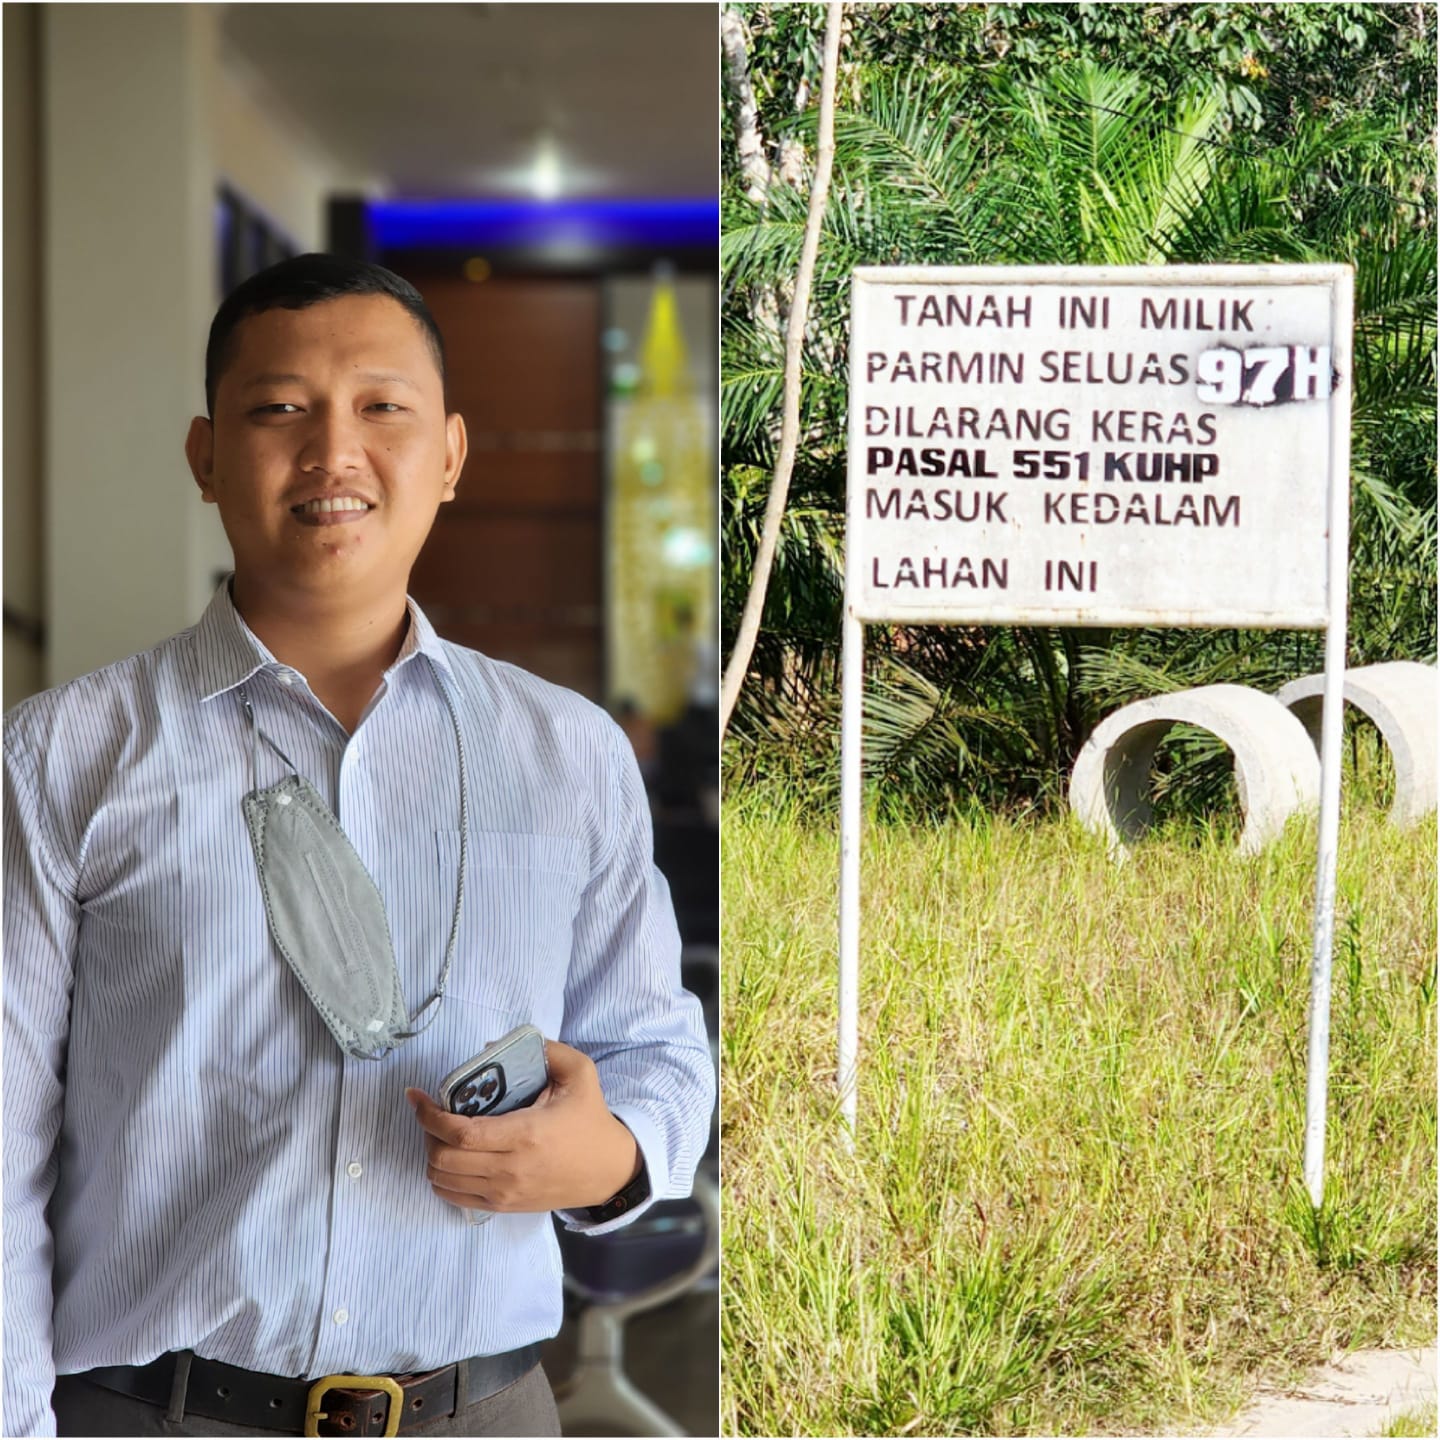 Plang Pemilik Tanah Seluas 97 Hektar Atas Nama Parmin di Kampung Rawang Air Putih Ternyata Hanya Pemegang Kuasa